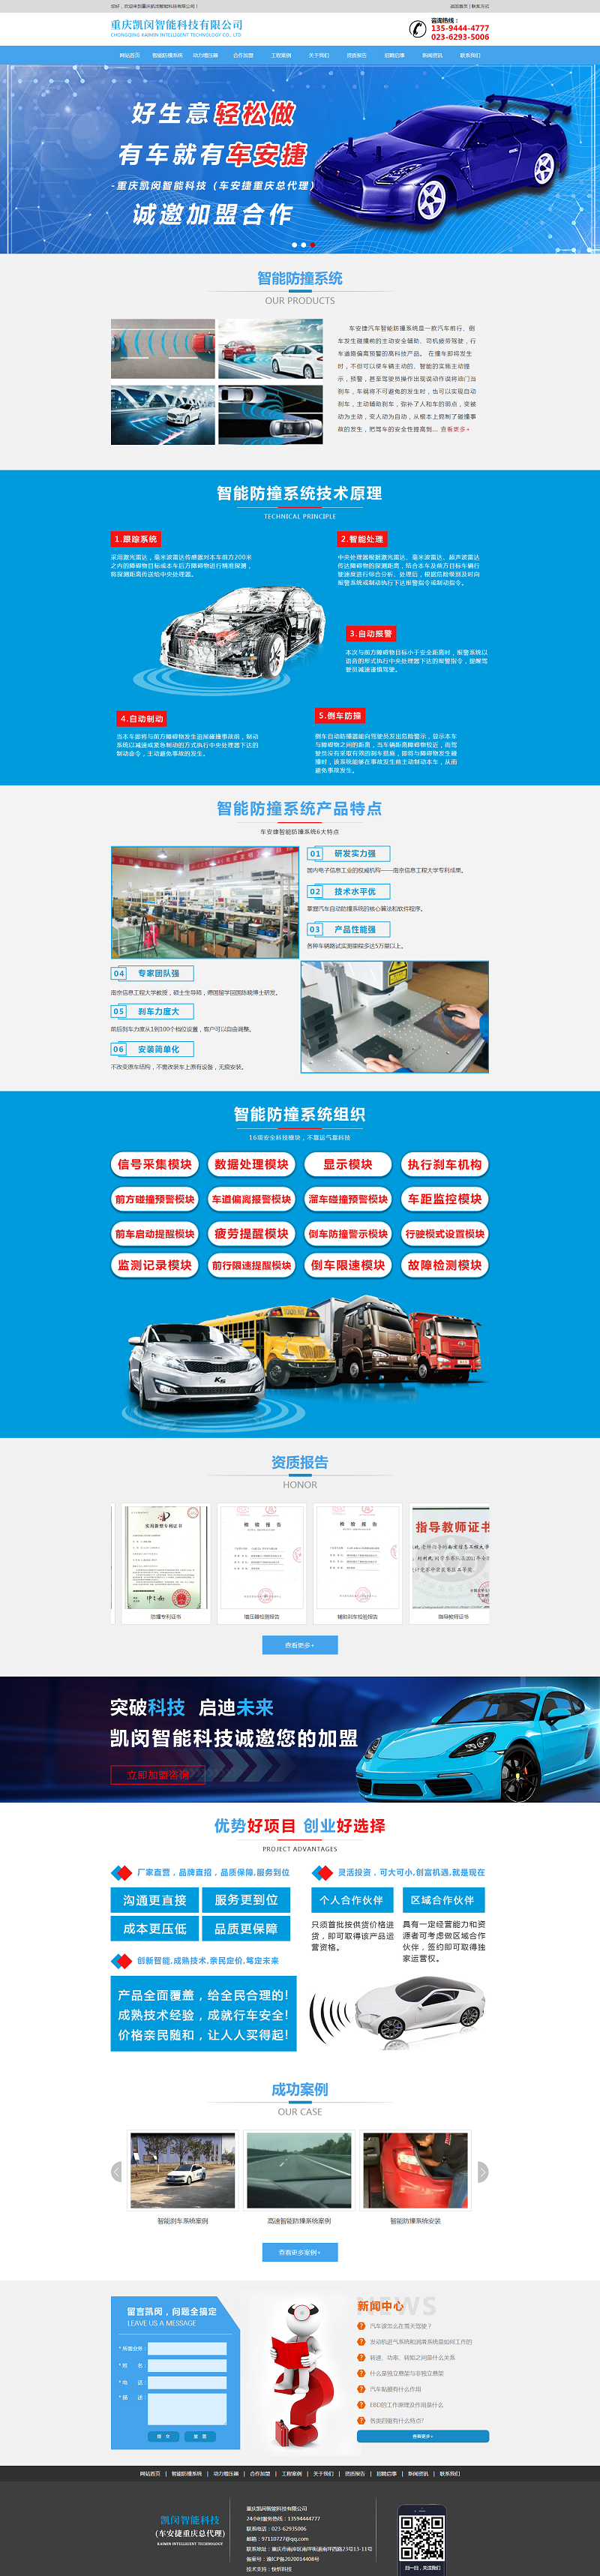 重庆凯闵智能科技有限公司网站建设案例